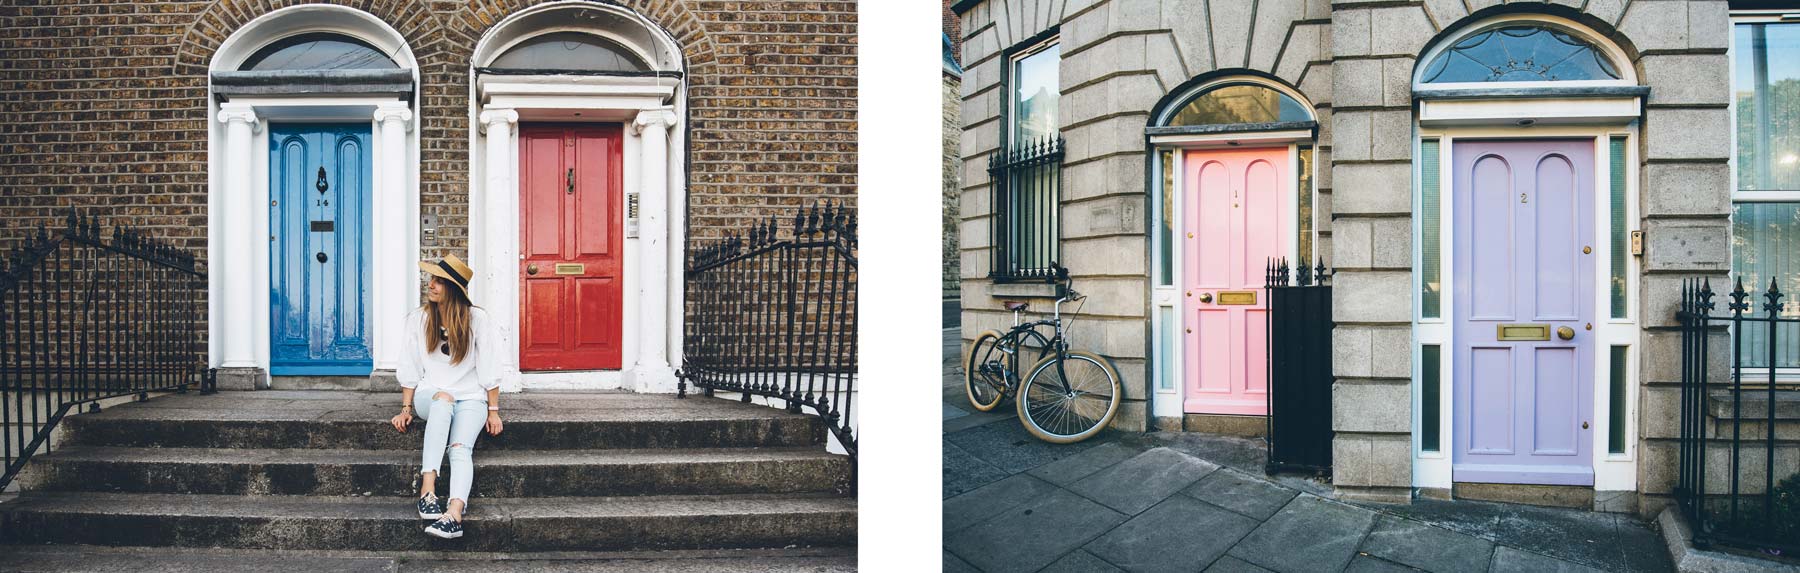 Portes Colorées, Dublin